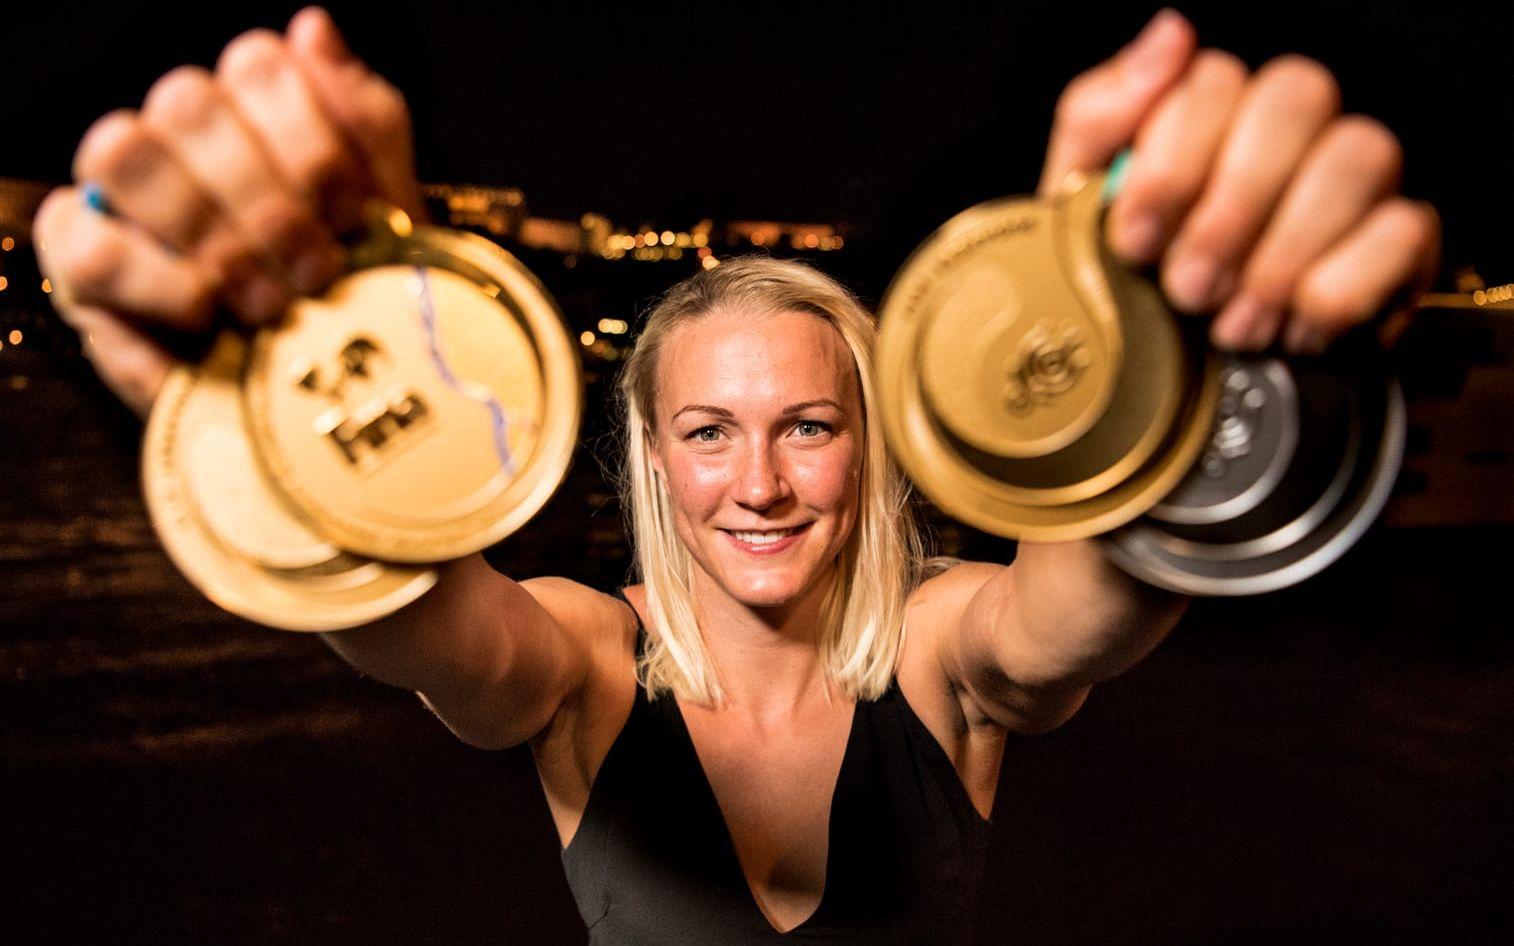 Totalt har det blivit 26 mästerskapsguld i OS, VM och EM för den nu 24-åriga Sarah Sjöström. Bild: Bildbyrån